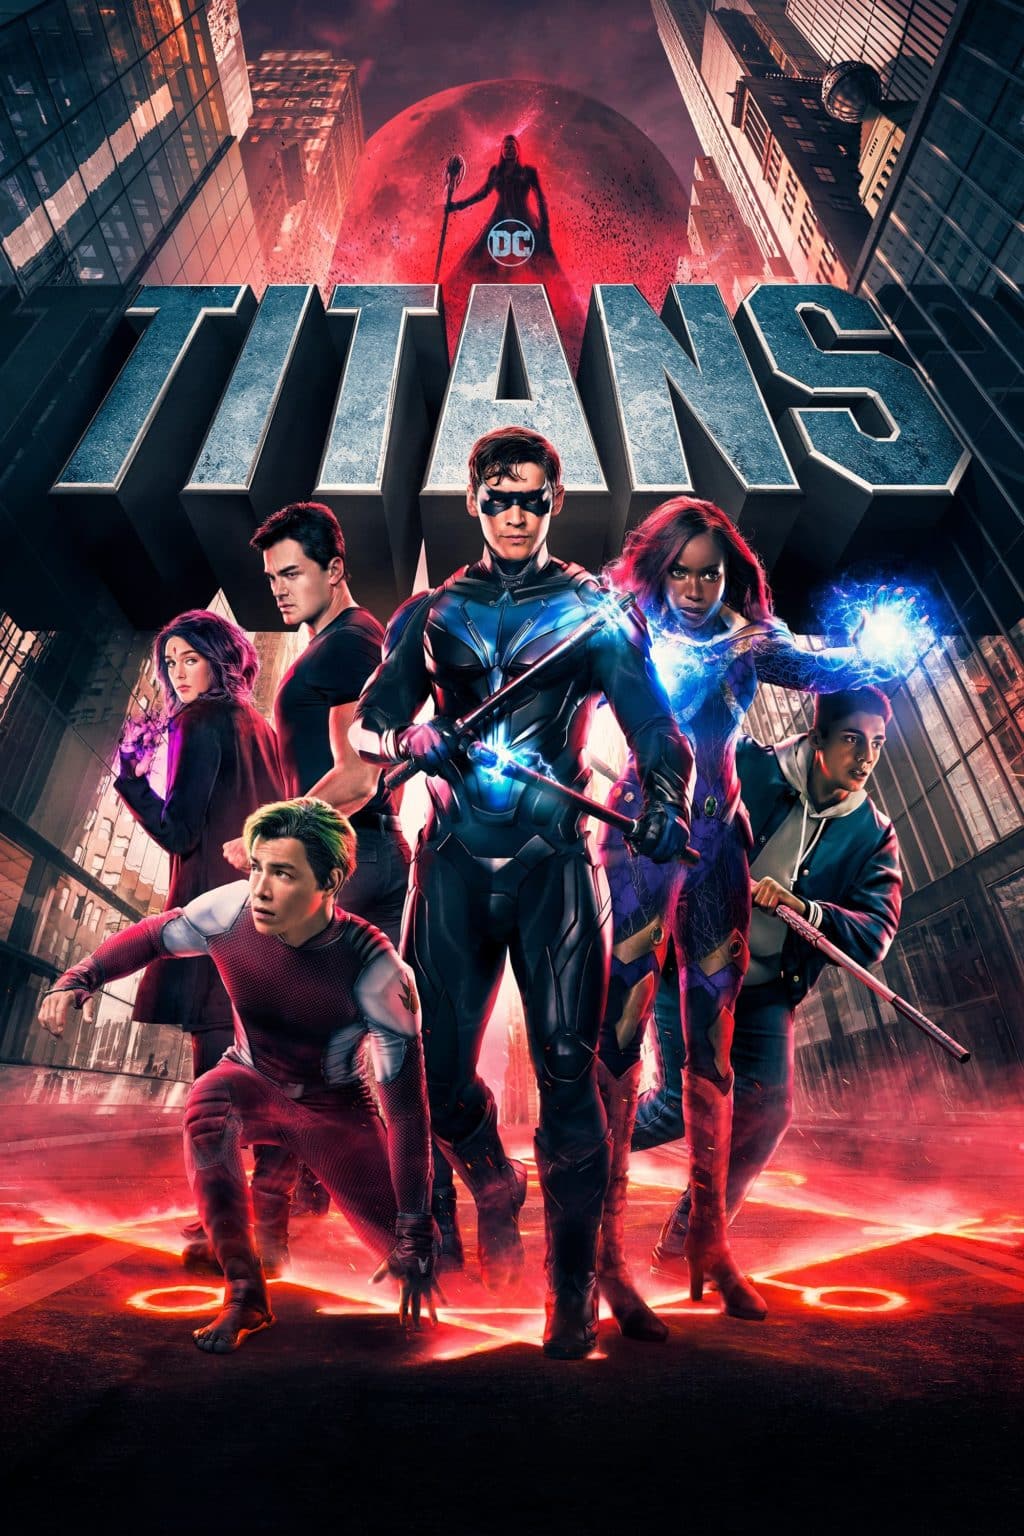 DCnautas - Pelo nome do episódio 12, parece que essa será a última temporada  de #Titans. A quarta temporada da série estreia no dia 3 Novembro no HBO  Max.